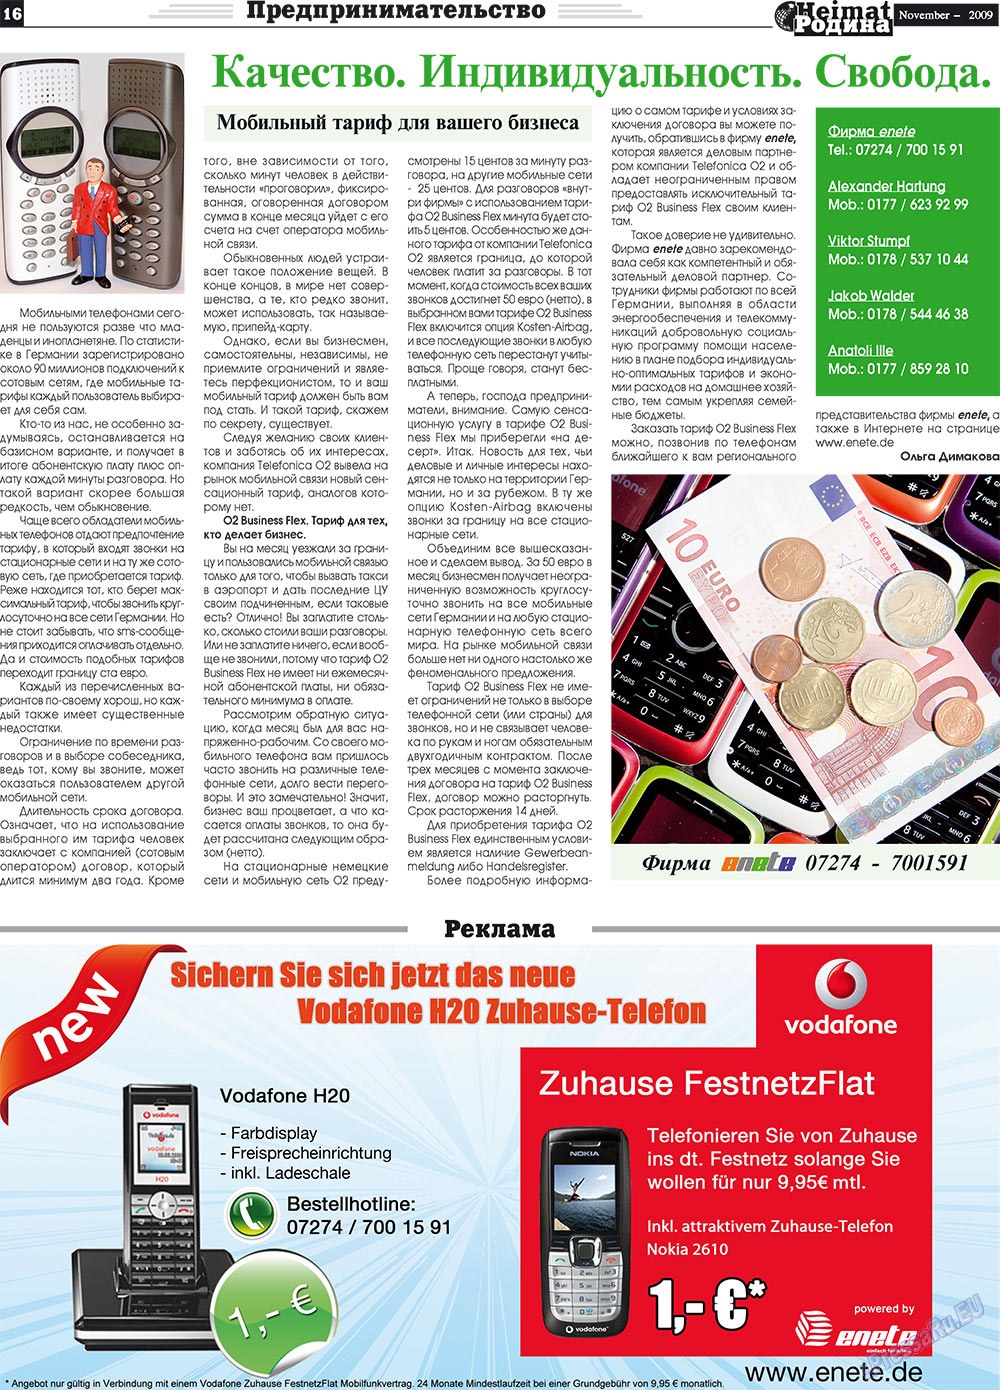 Heimat-Родина (газета). 2009 год, номер 11, стр. 16